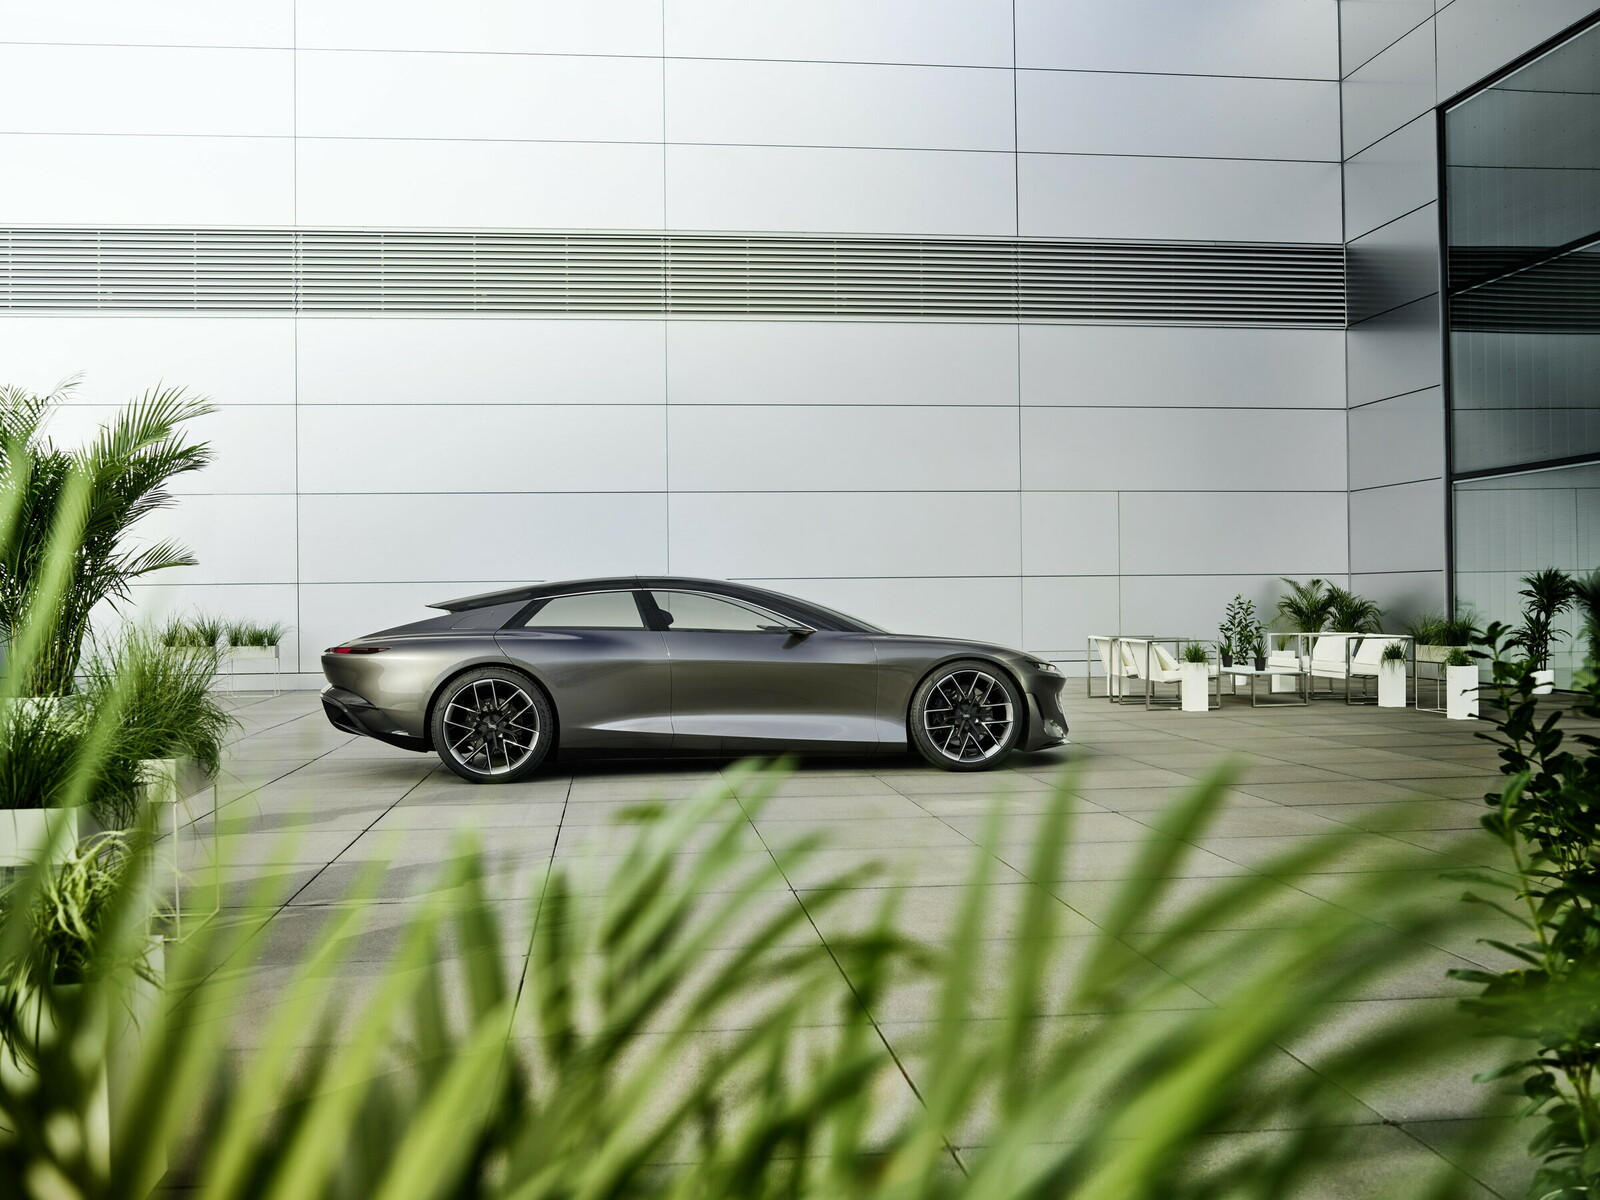 Das Elektroflaggschiff Grandsphere fasst Audis Zukunftspläne in einem Luxuskonzept zusammen.